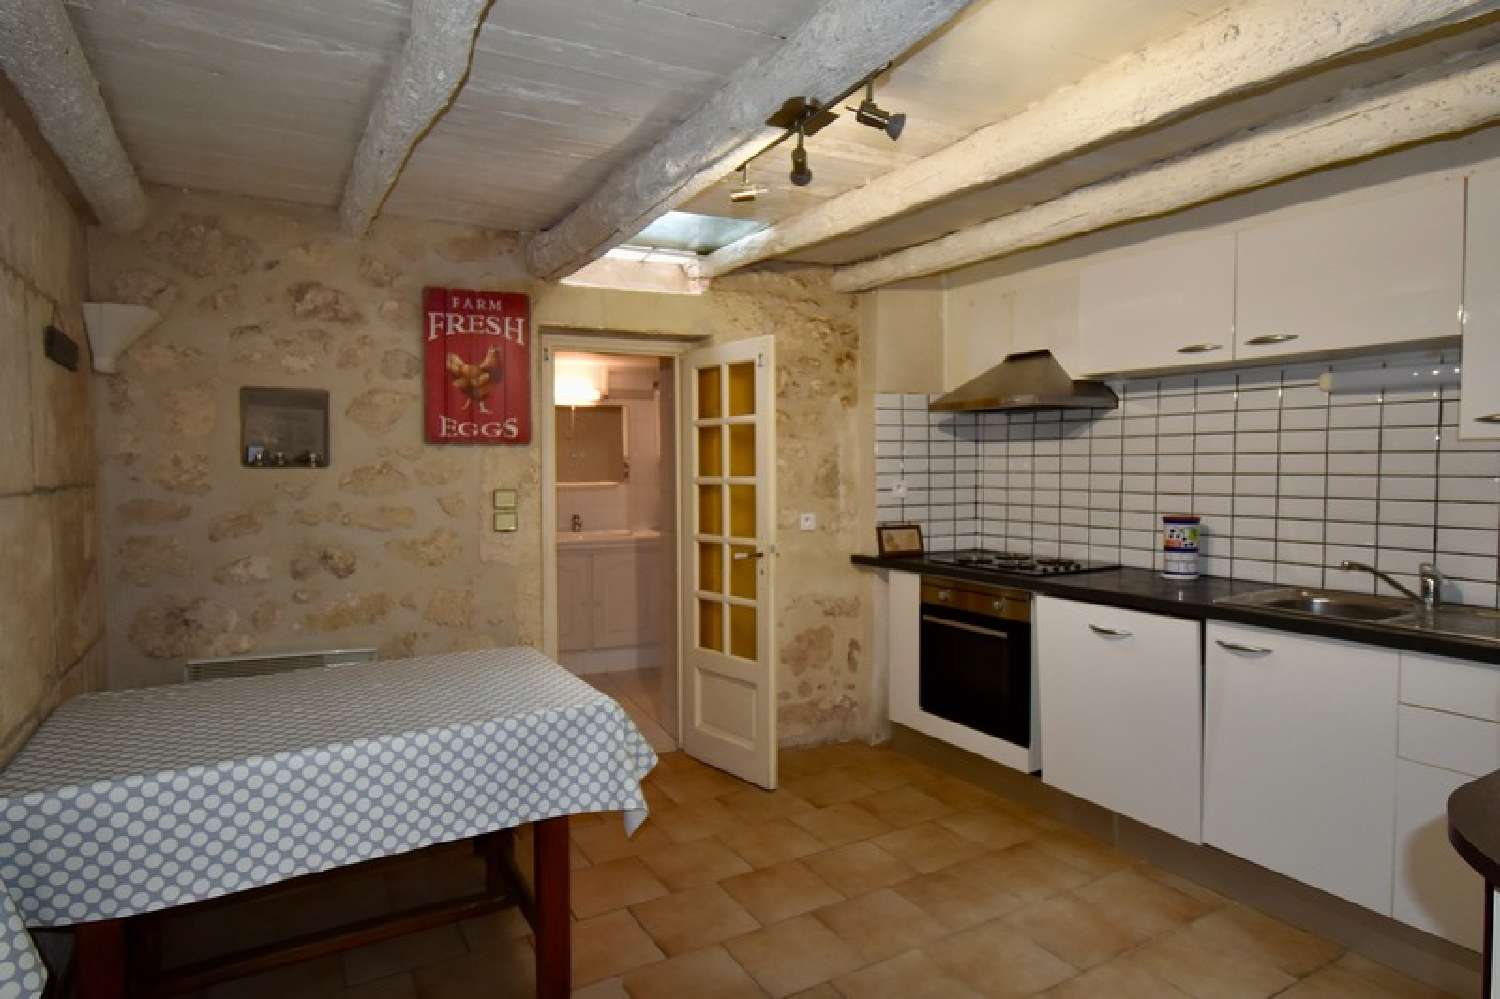  for sale village house Fontvieille Bouches-du-Rhône 2